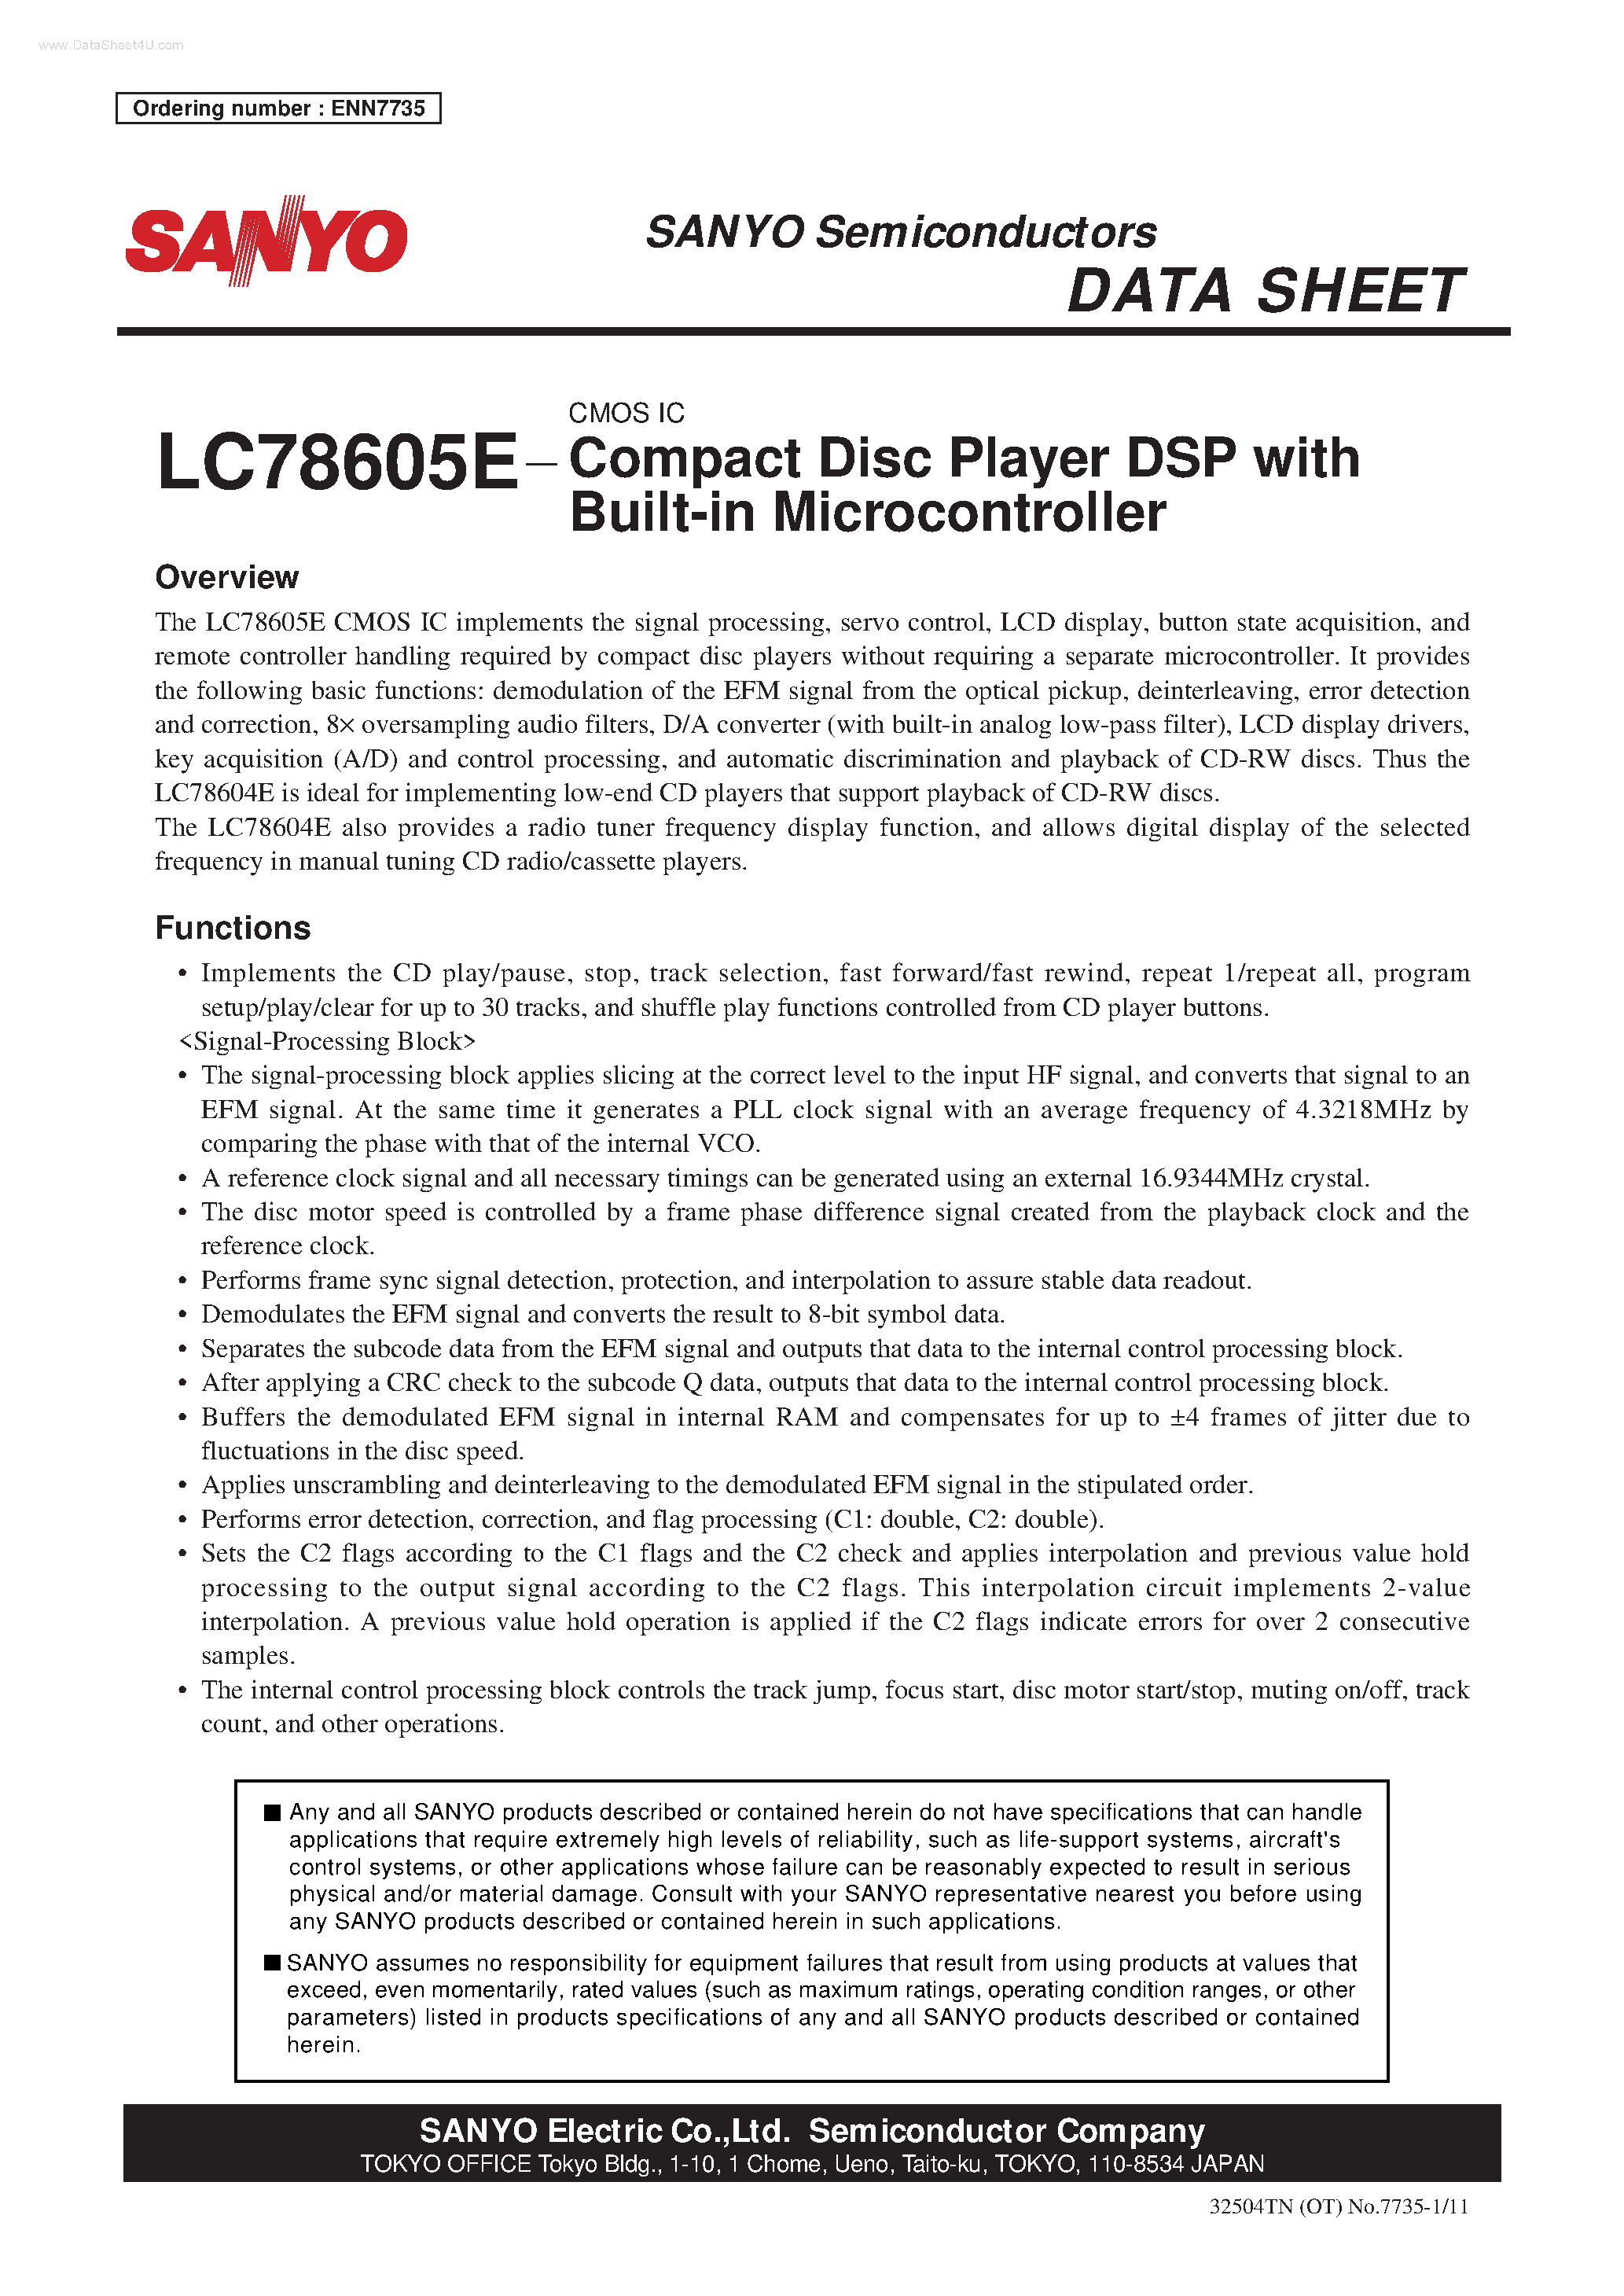 Даташит LC78605E - Compact Disc Player DSP страница 1